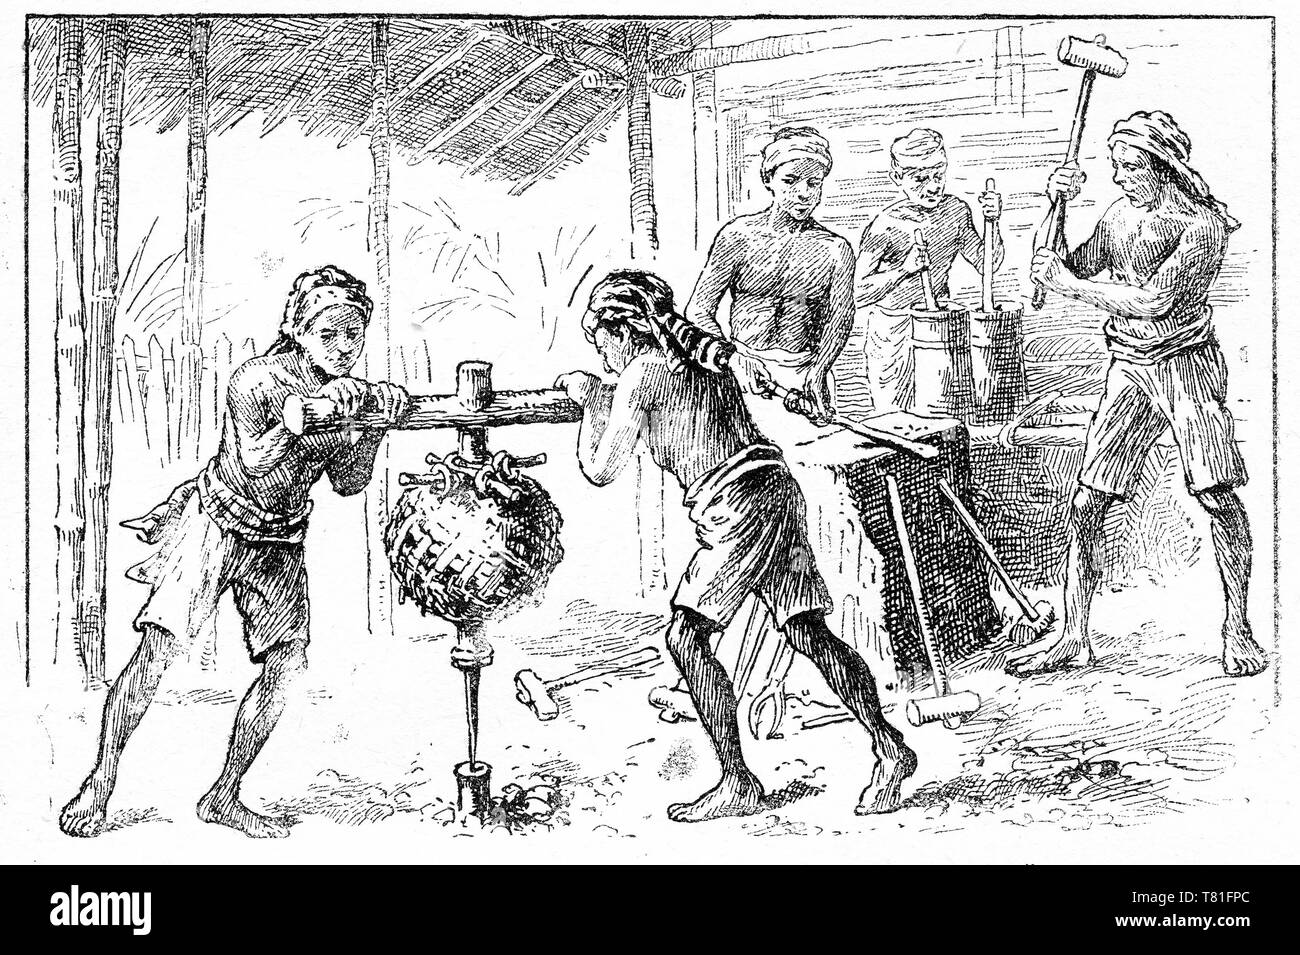 Gravure d'un travailleurs asiatiques dans un atelier du forgeron travaillant à une enclume. Deux garçons se tournent une perceuse pour faire pondérée primitive un trou dans un morceau de métal. Chatterbox Magazine, 1917 Banque D'Images